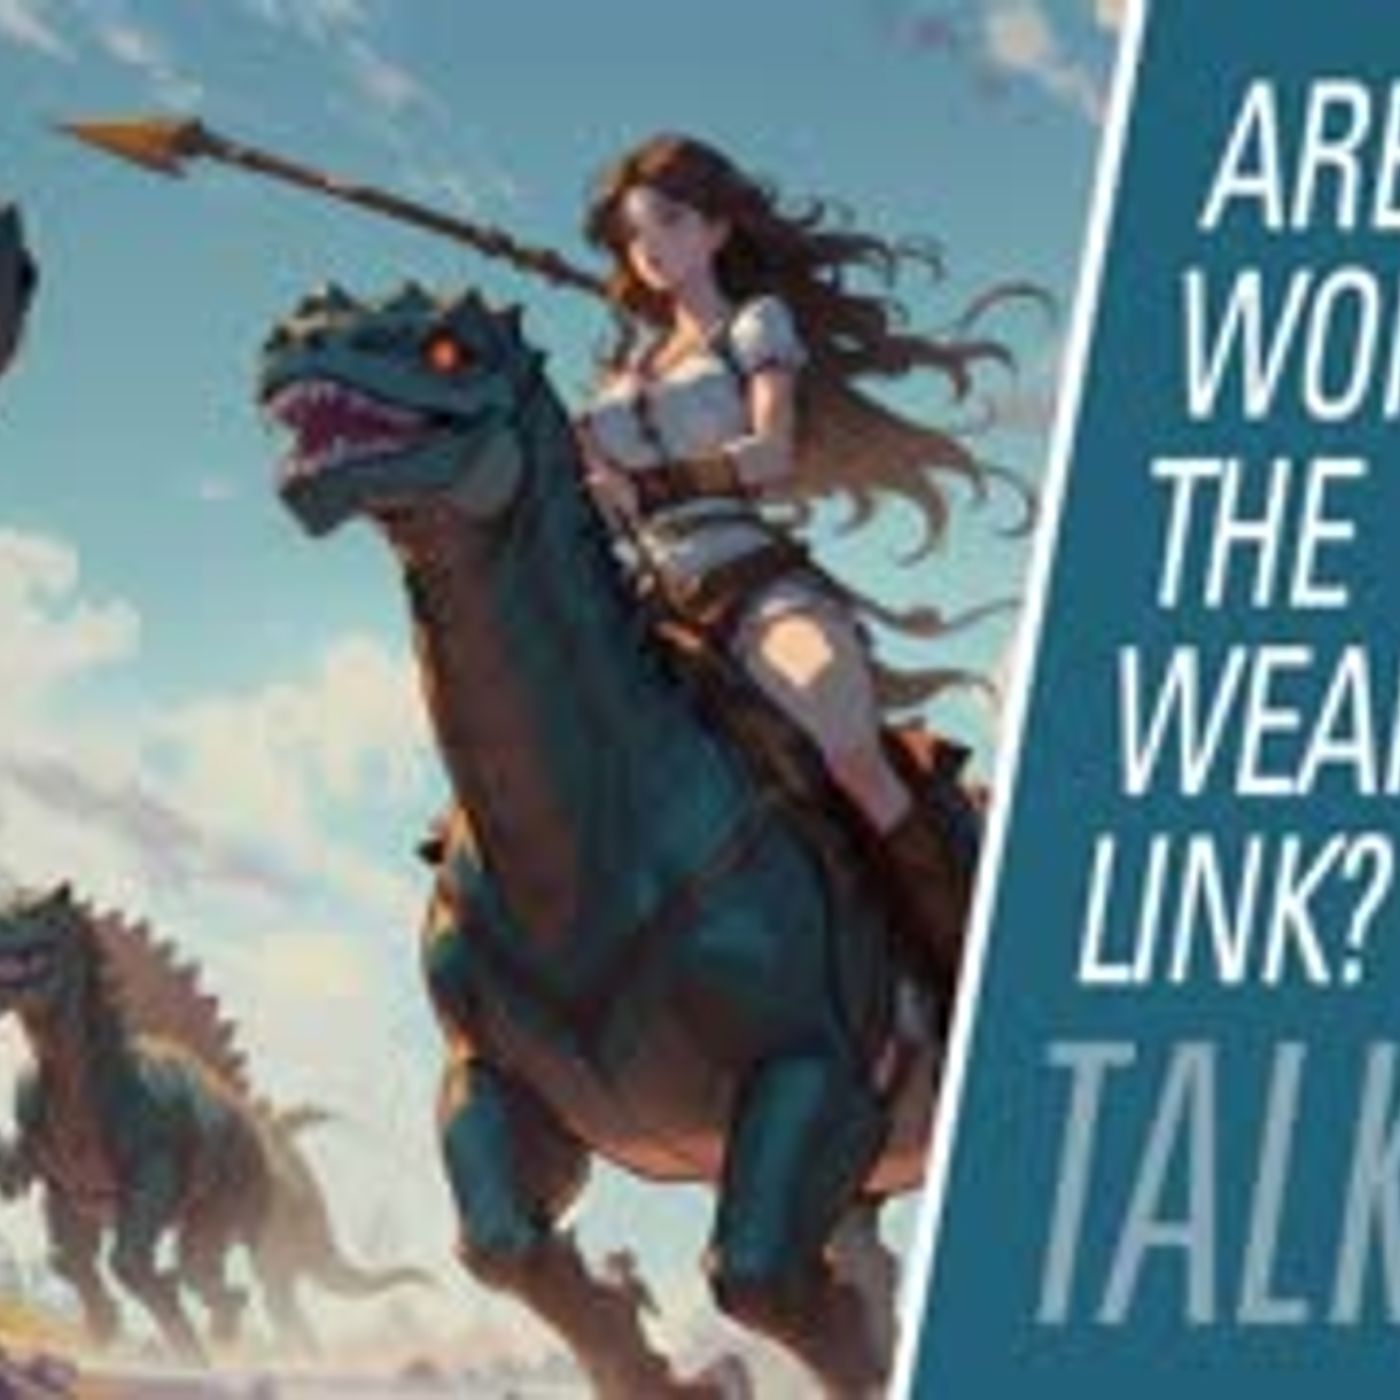 Are women the weaker link? | HBR Talk 304